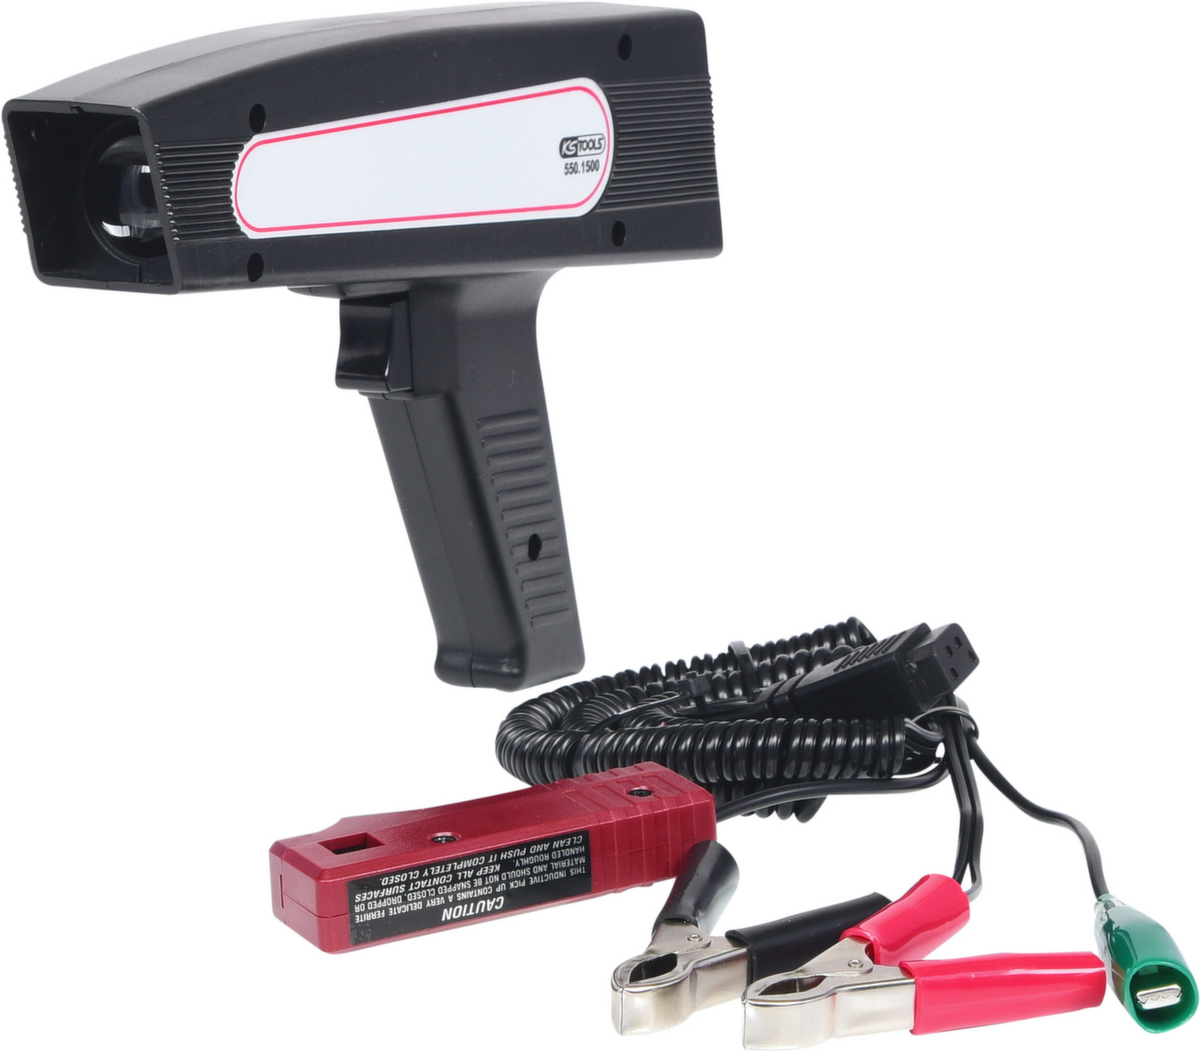 Digitaal ontstekingstijdstip pistool (stroboscoop) met LED-display  ZOOM